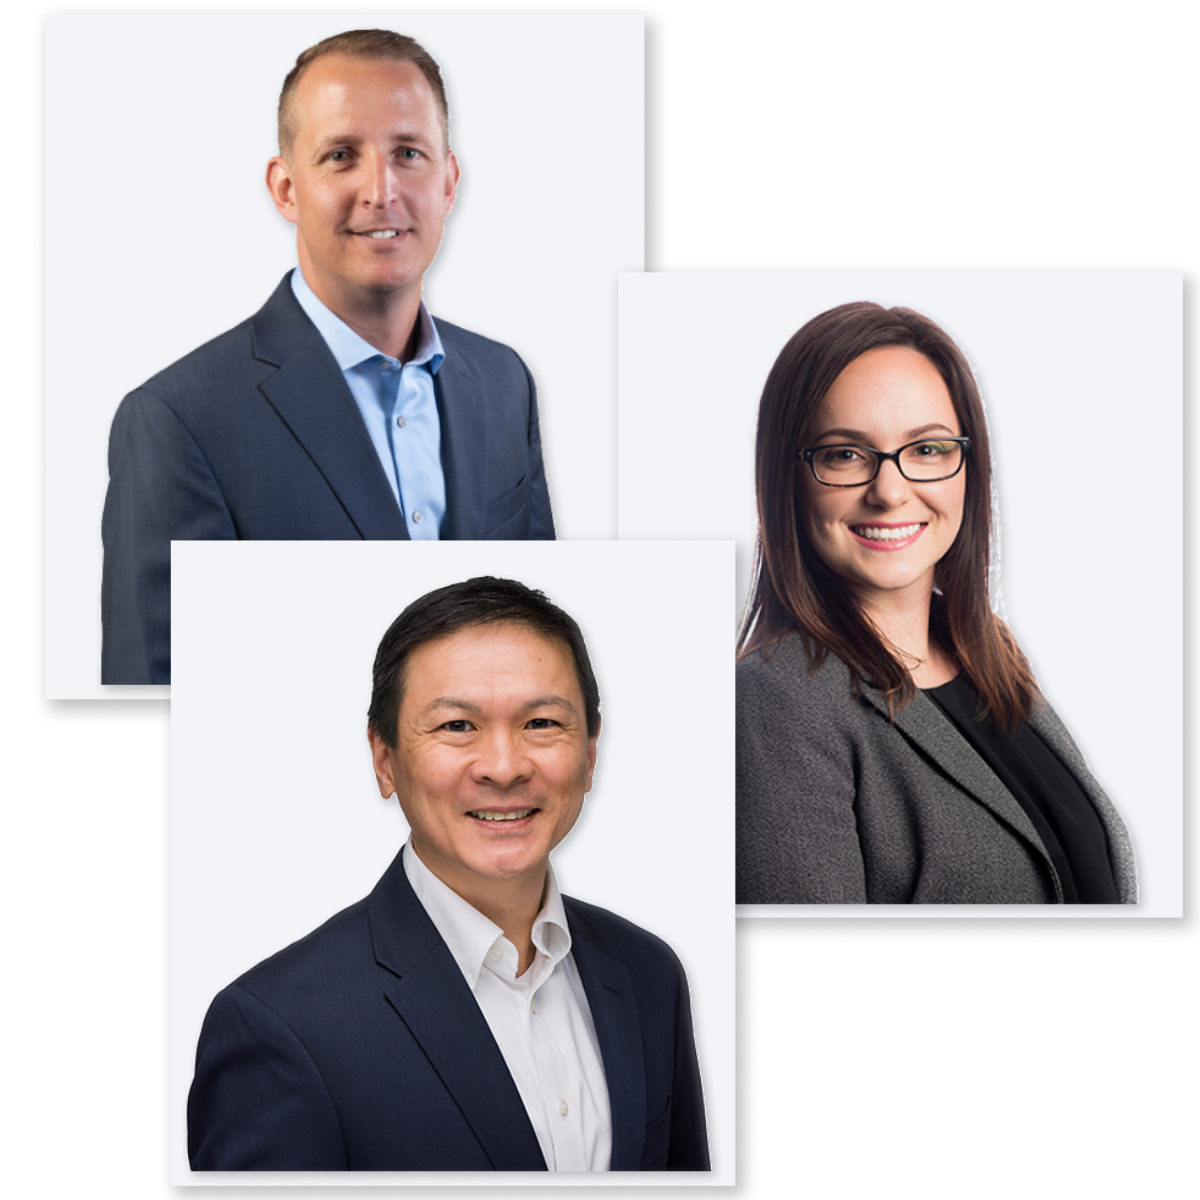 Financial Advisors - Ryan, Kristy, John